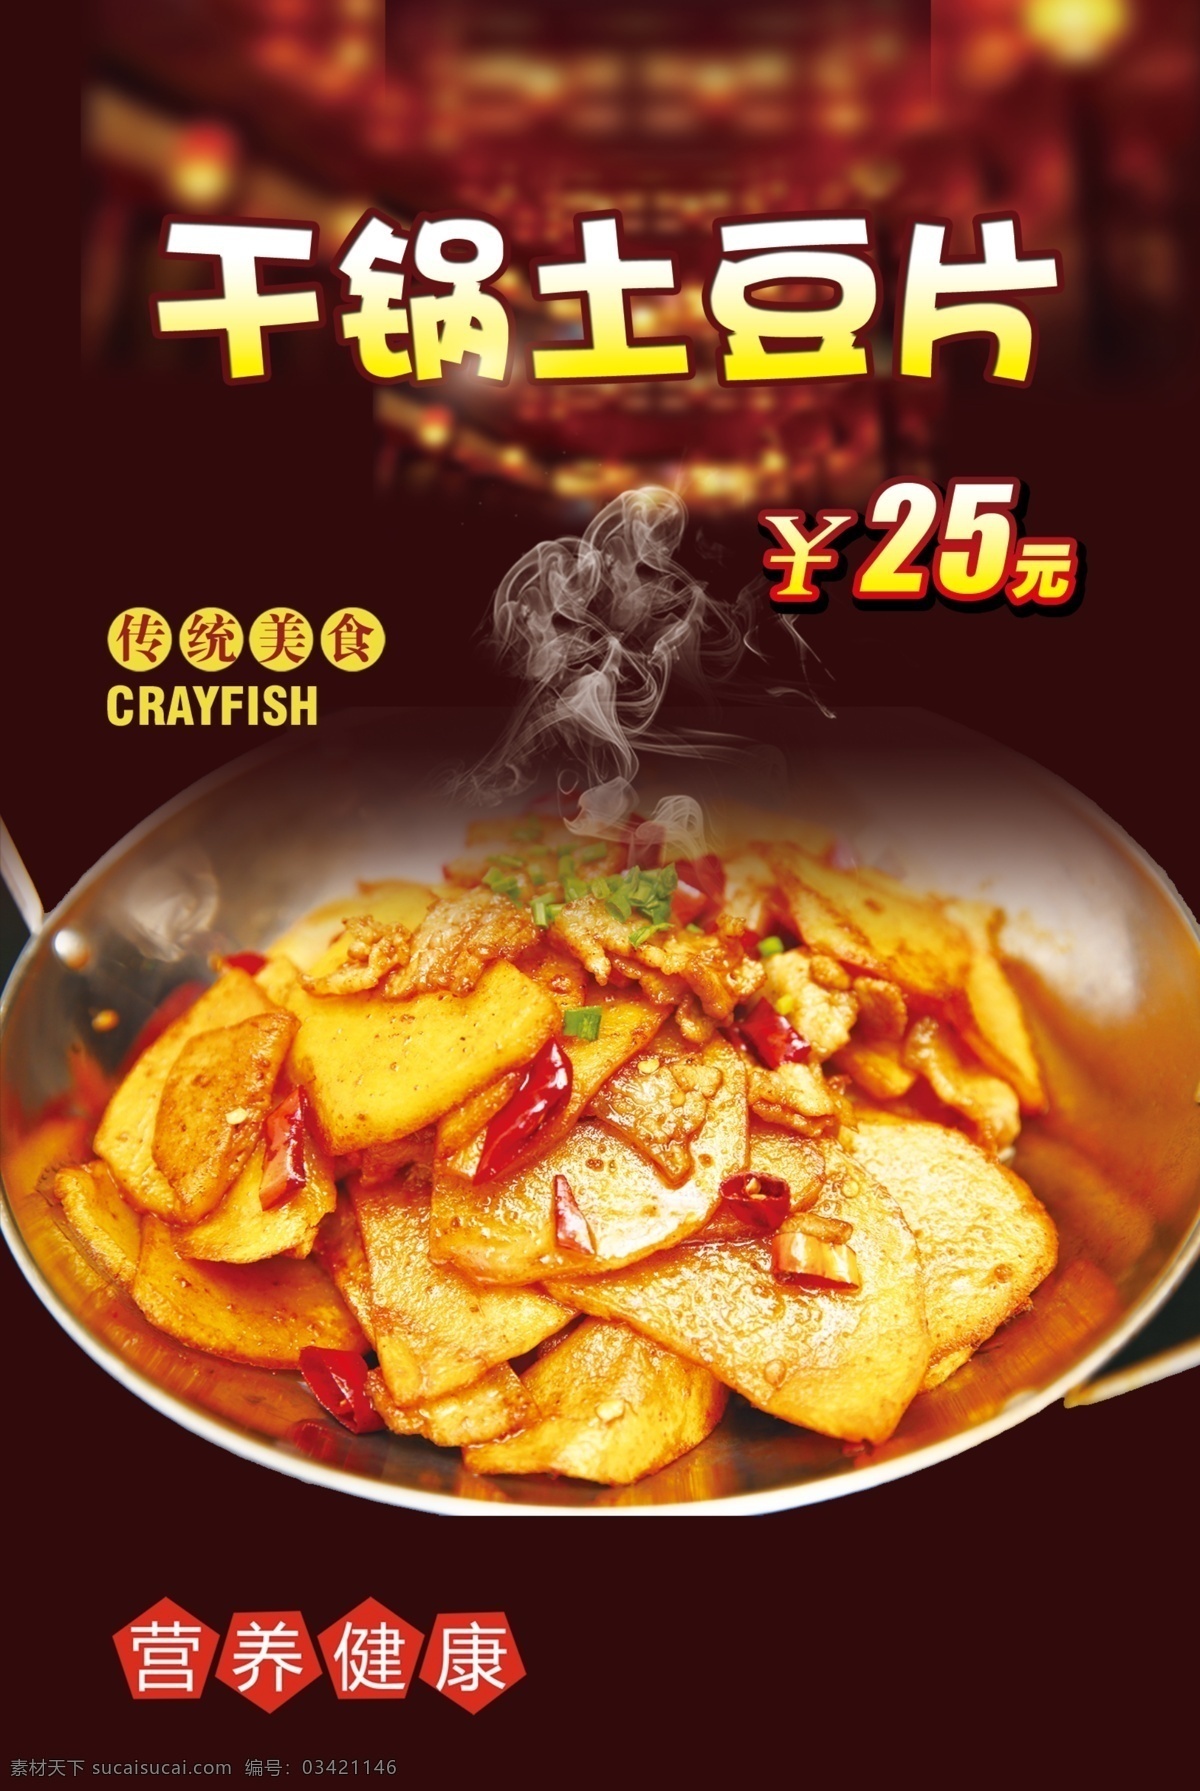 干锅土豆片 锅仔 菜品 健康 美食 海报